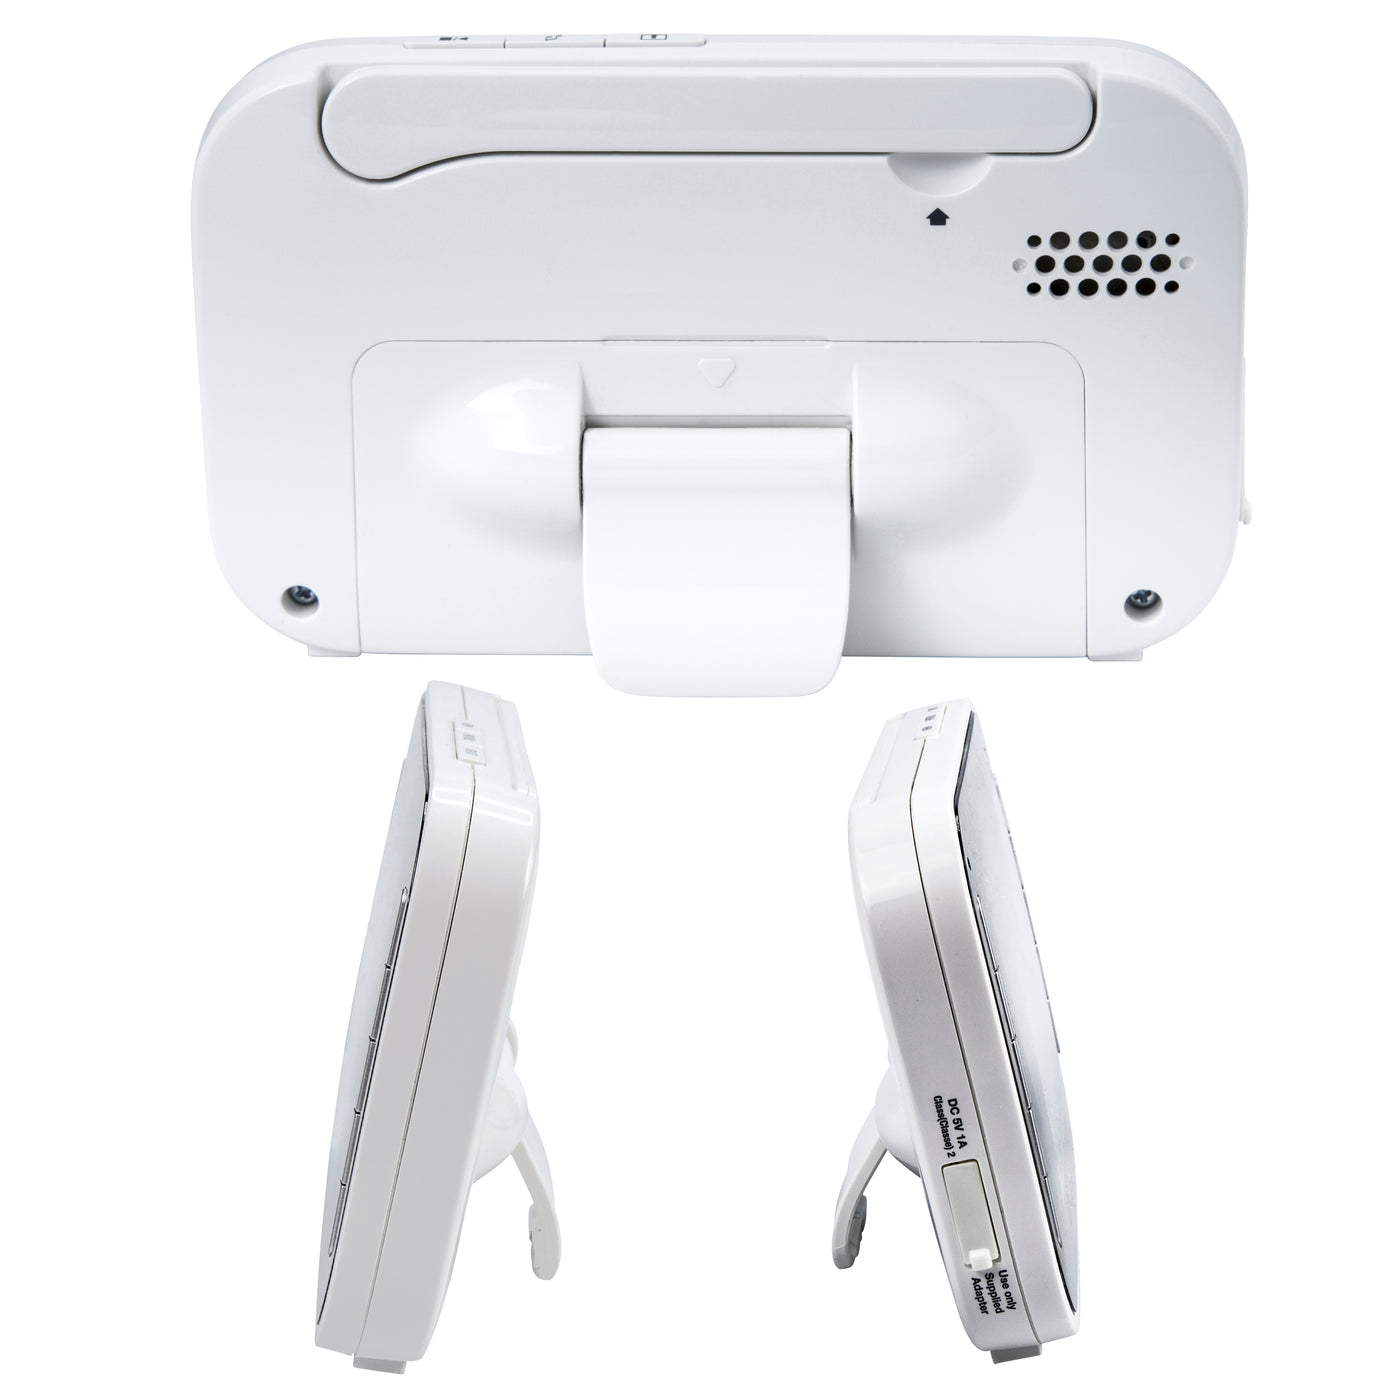 Alecto DVM-143 - Babyphone mit Kamera und 4.3"-Farbdisplay, Weiß/Anthrazit